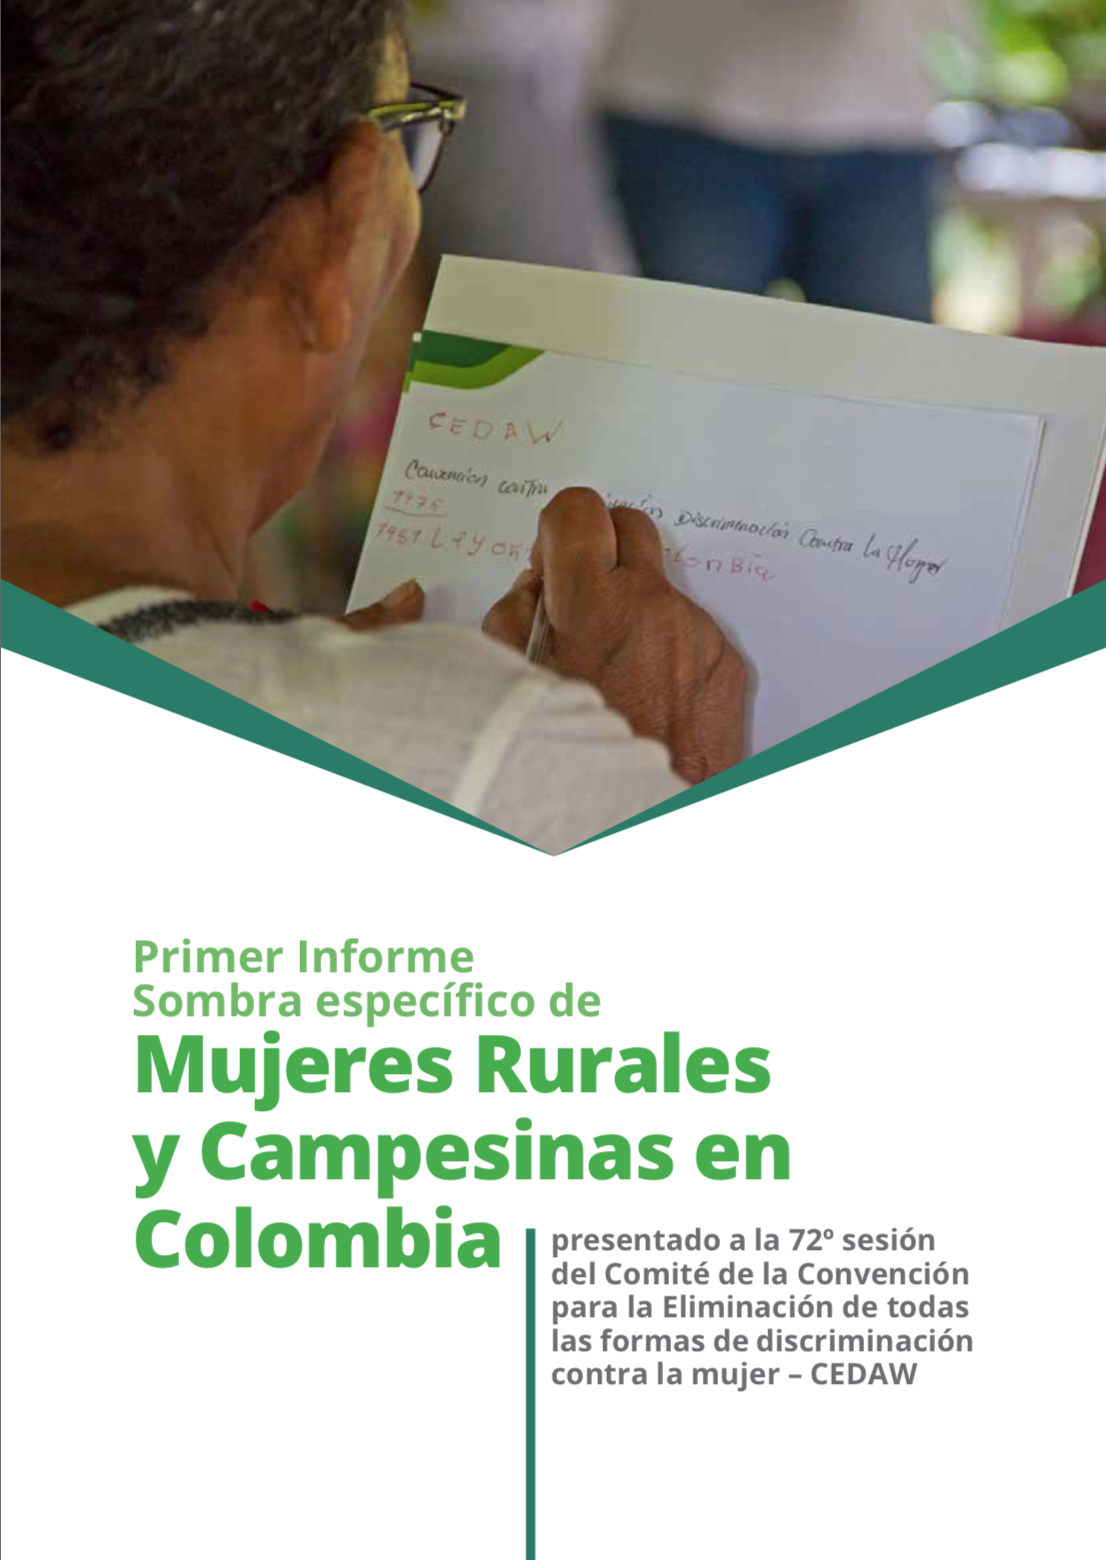 Grafica alusiva a Primer Informe Sombra específico de Mujeres Rurales y Campesinas en Colombia. Presentado a la 72o sesión del Comité de la Convención para la eliminación de todas las formas de discriminación contra la mujer – CEDAW.  